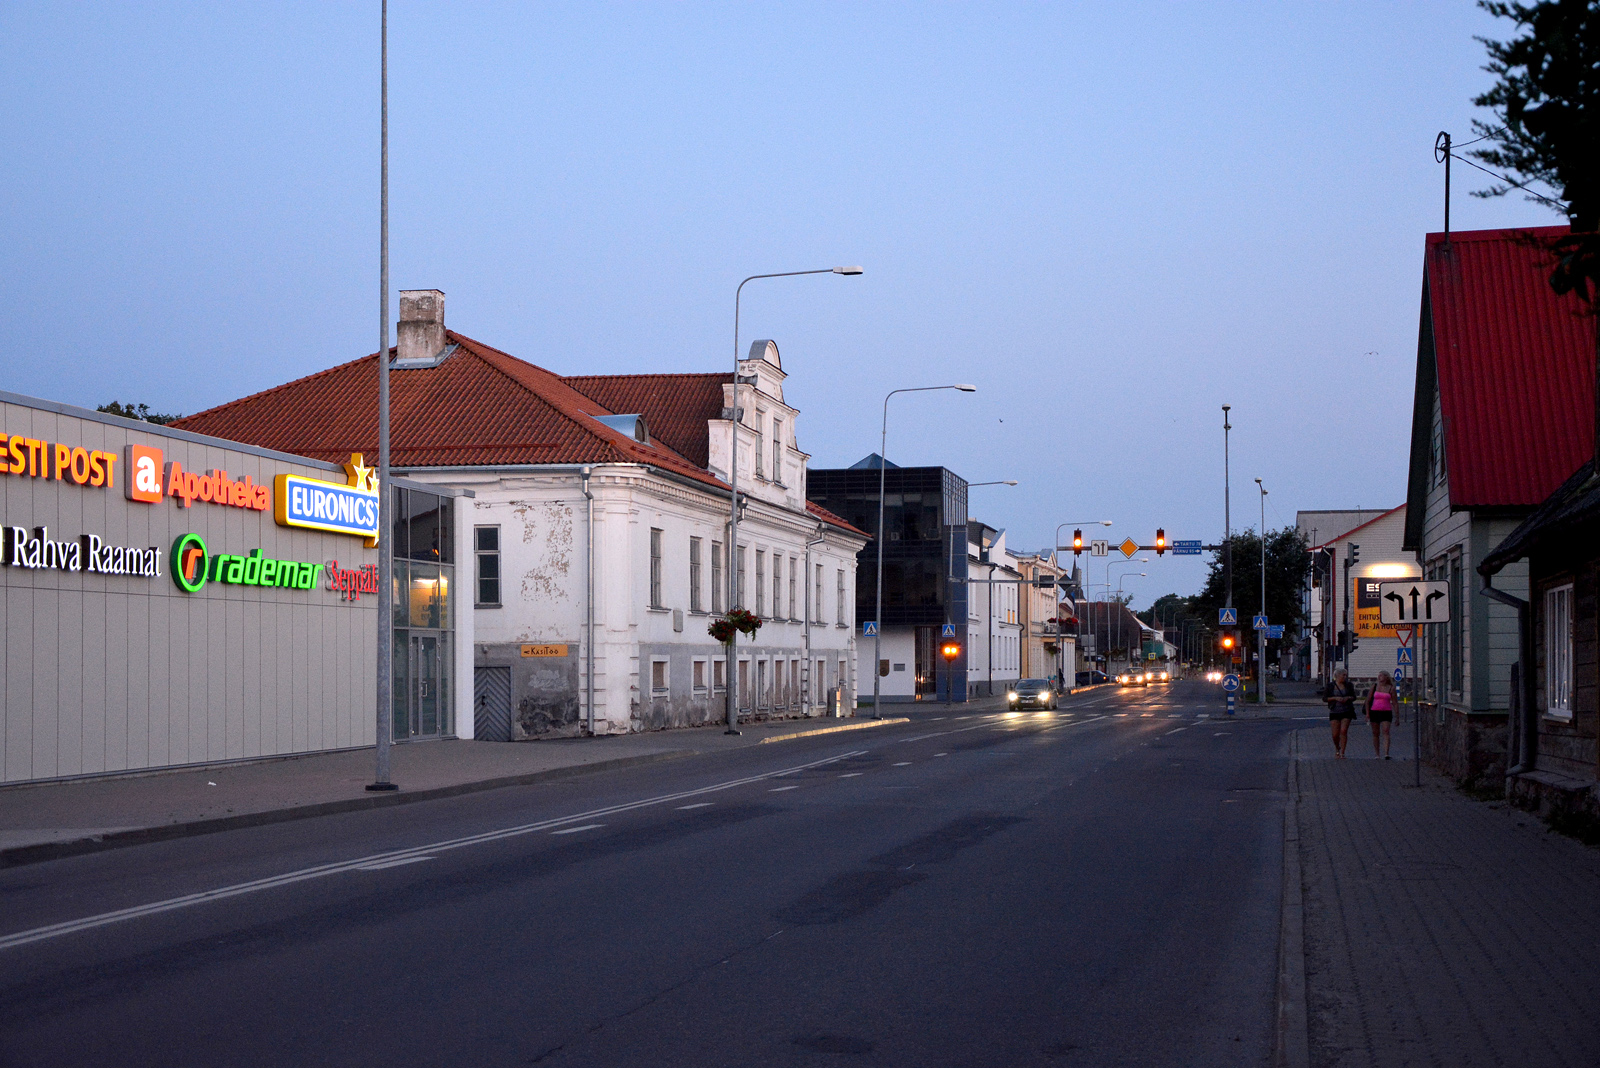 Aadlipreilide kodu Viljandis, Tallinna tänaval rephoto